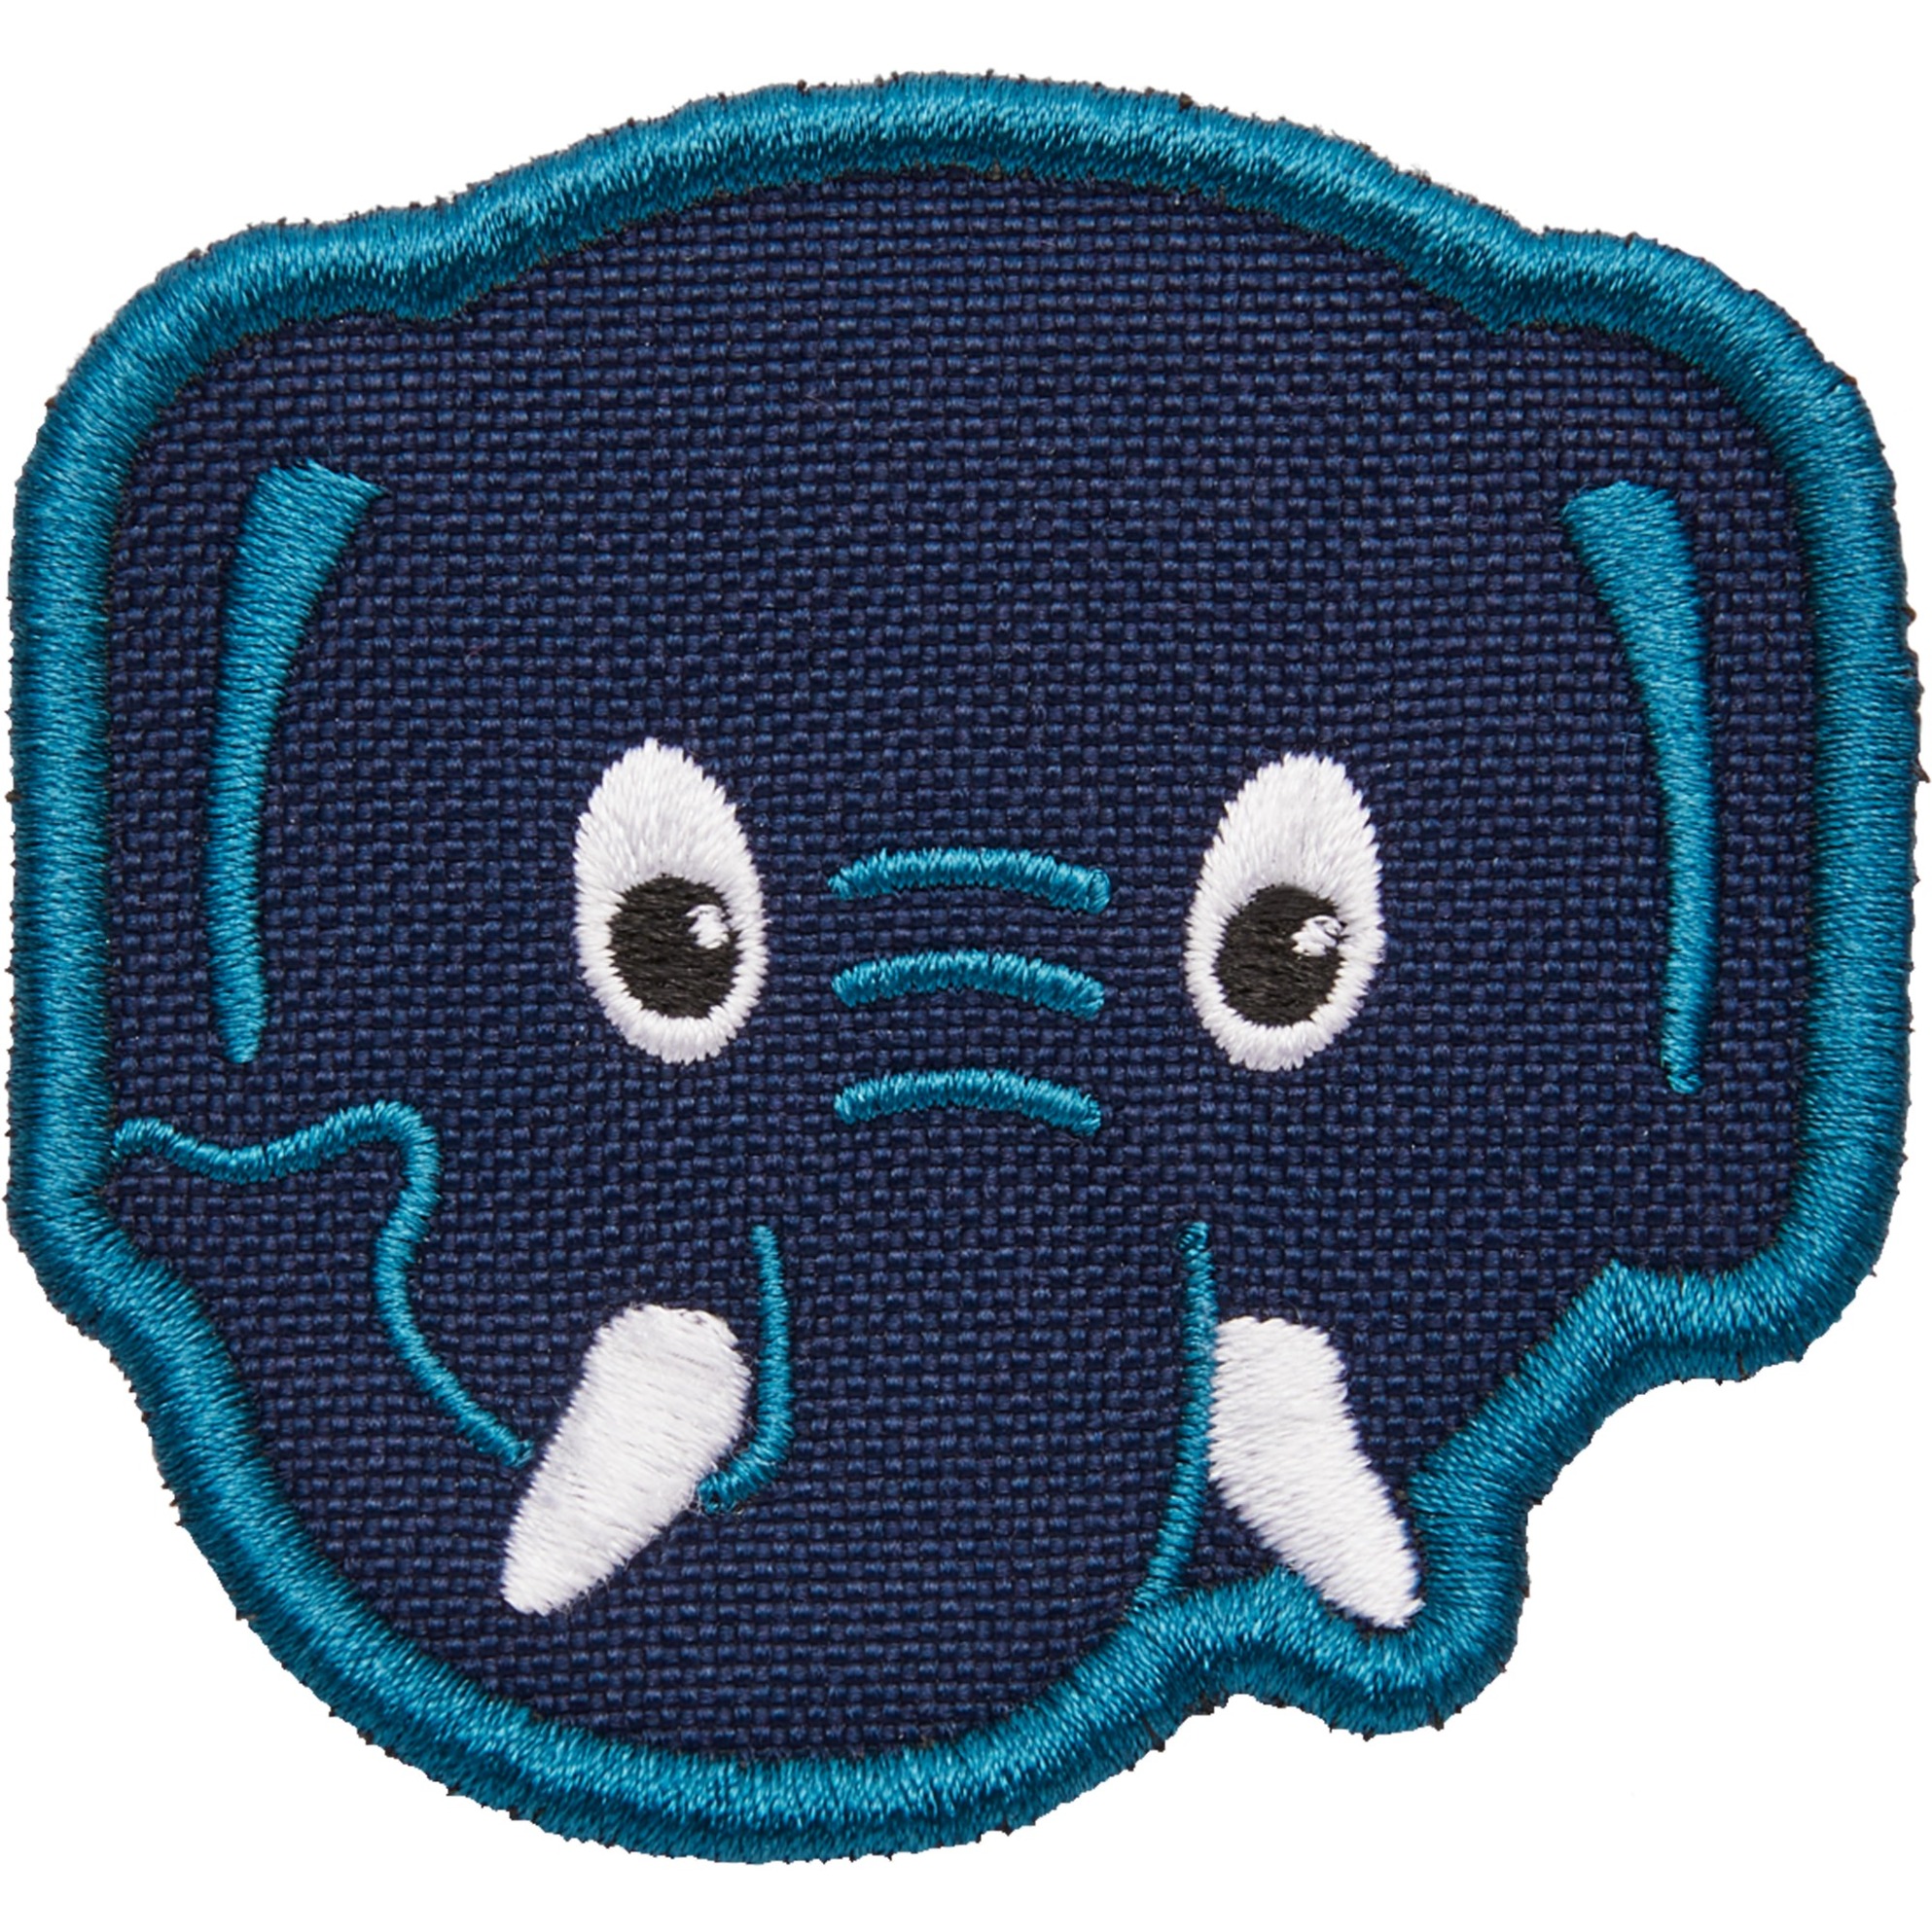 Image of Alternate - Klett-Badge Elefant, Patch online einkaufen bei Alternate